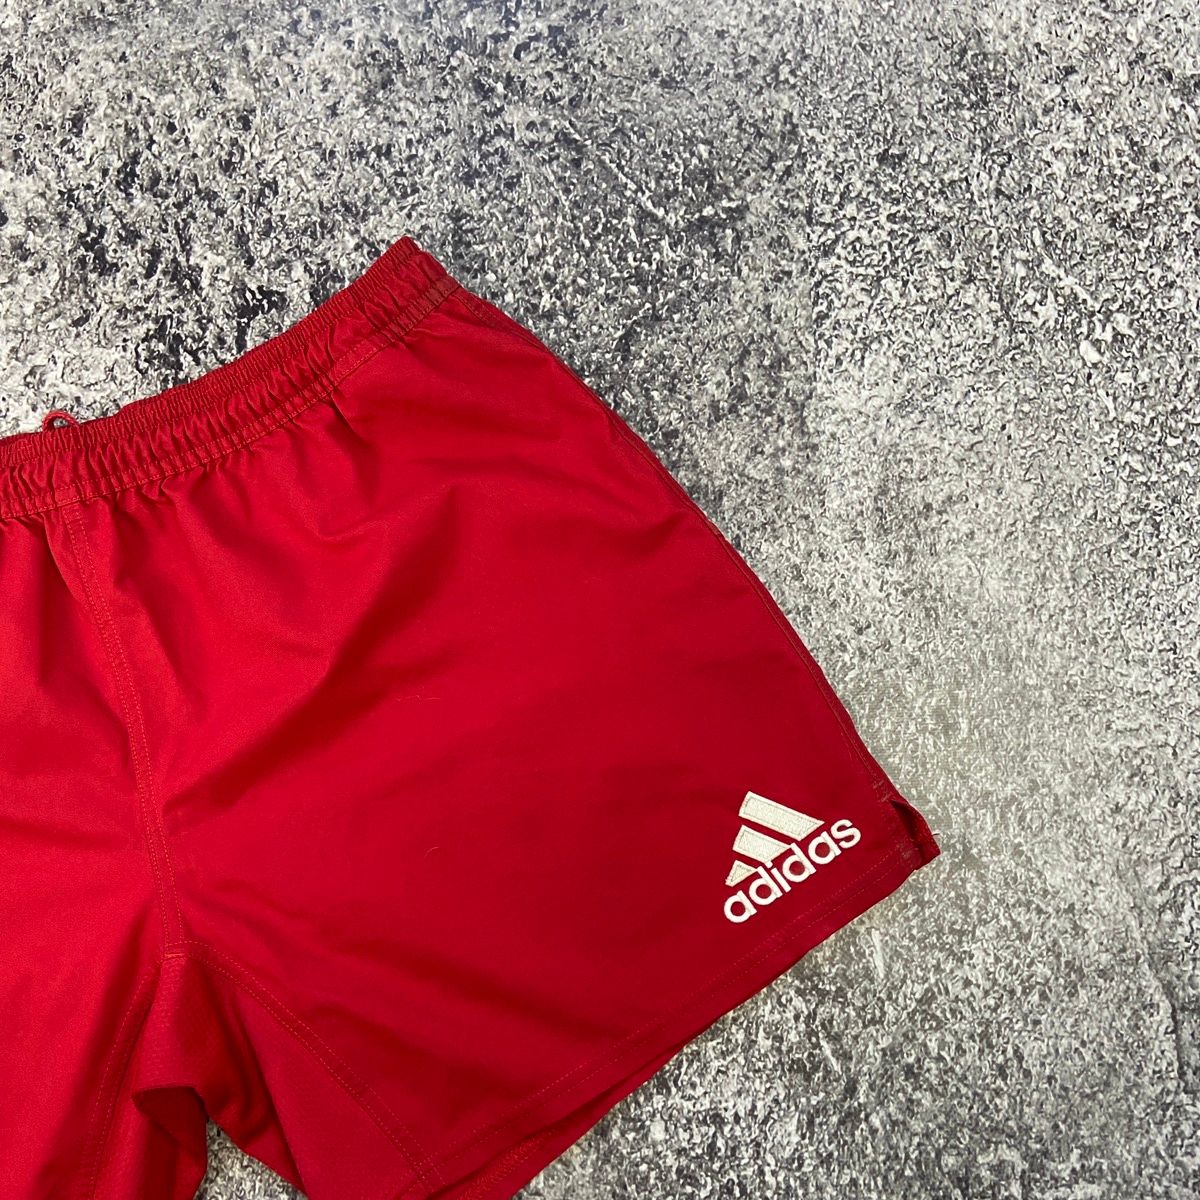 Adidas Man Shorts Adidas Vintage Red White Striped Mini Logo Y2k Size US 40 / EU 56 - 4 Thumbnail